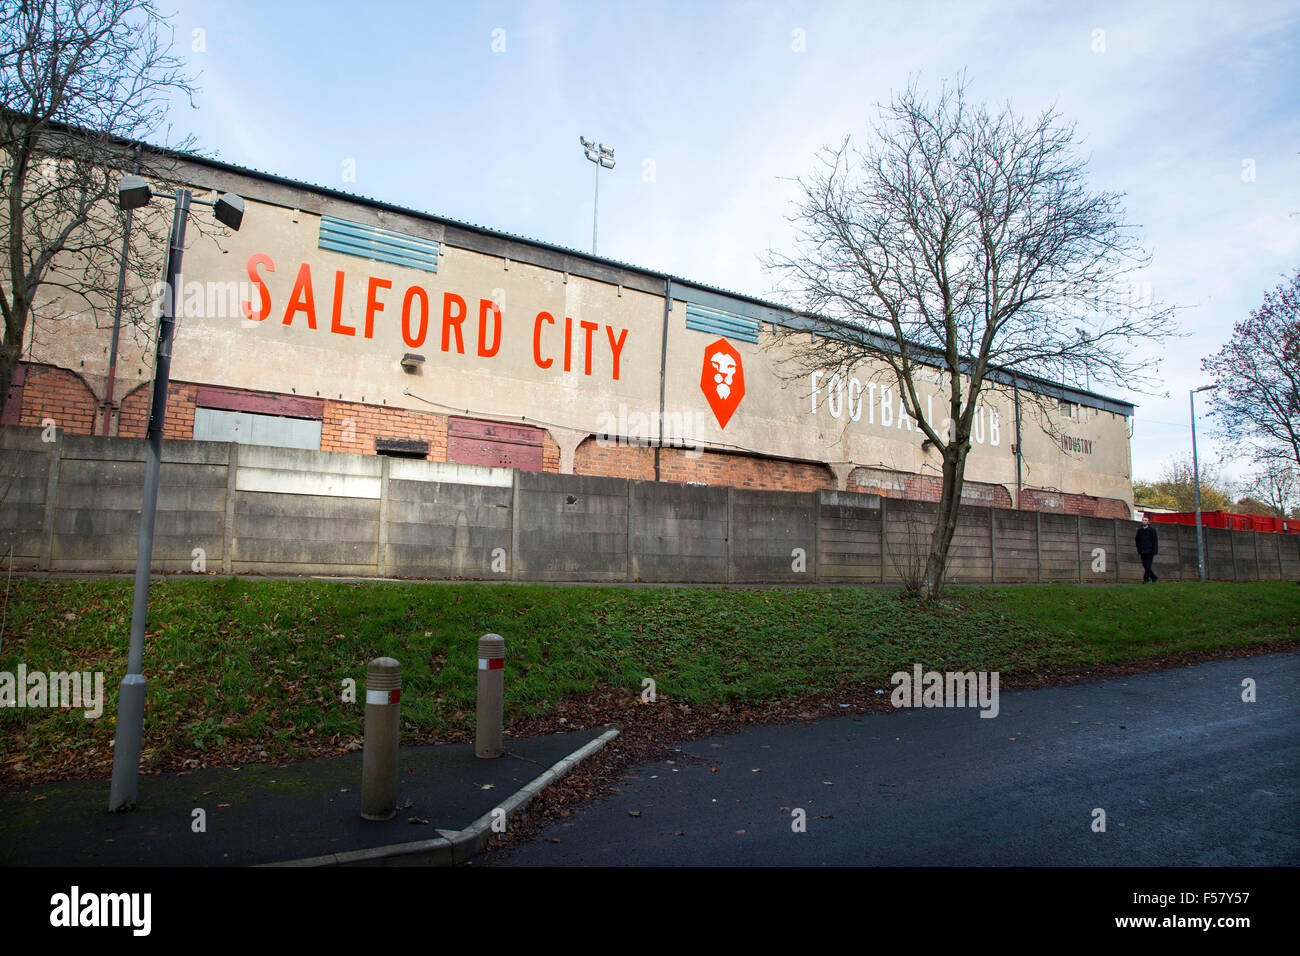 Club de Fútbol de la ciudad de Salford en Manchester, miembros de la Northern Premier League Premier Division en Inglaterra Foto de stock